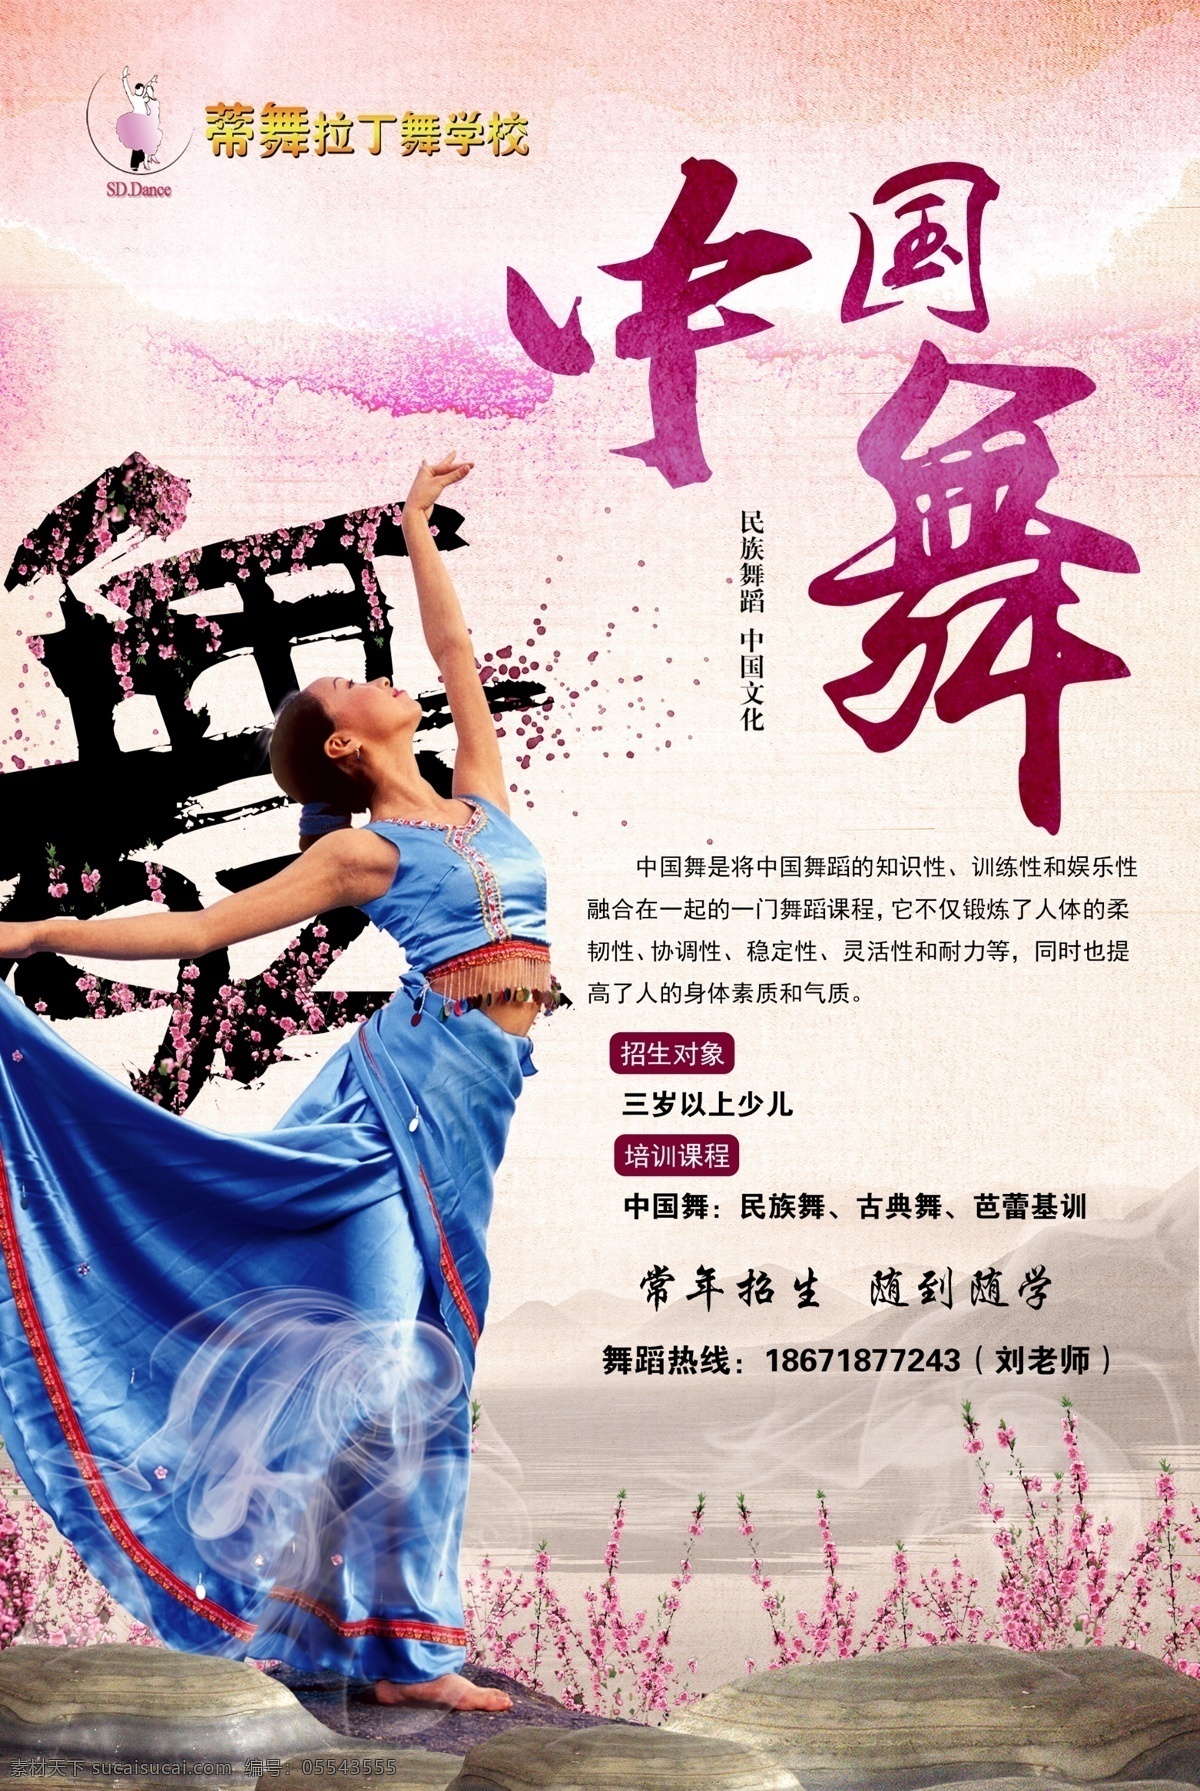 蒂舞拉丁 蒂舞 蒂舞拉丁舞 杨泽鄂 中国舞 民族舞 中国舞招生 中国舞宣传 中国舞展架 舞者 舞蹈学校 舞蹈班 舞蹈培训宣传 中国舞室内